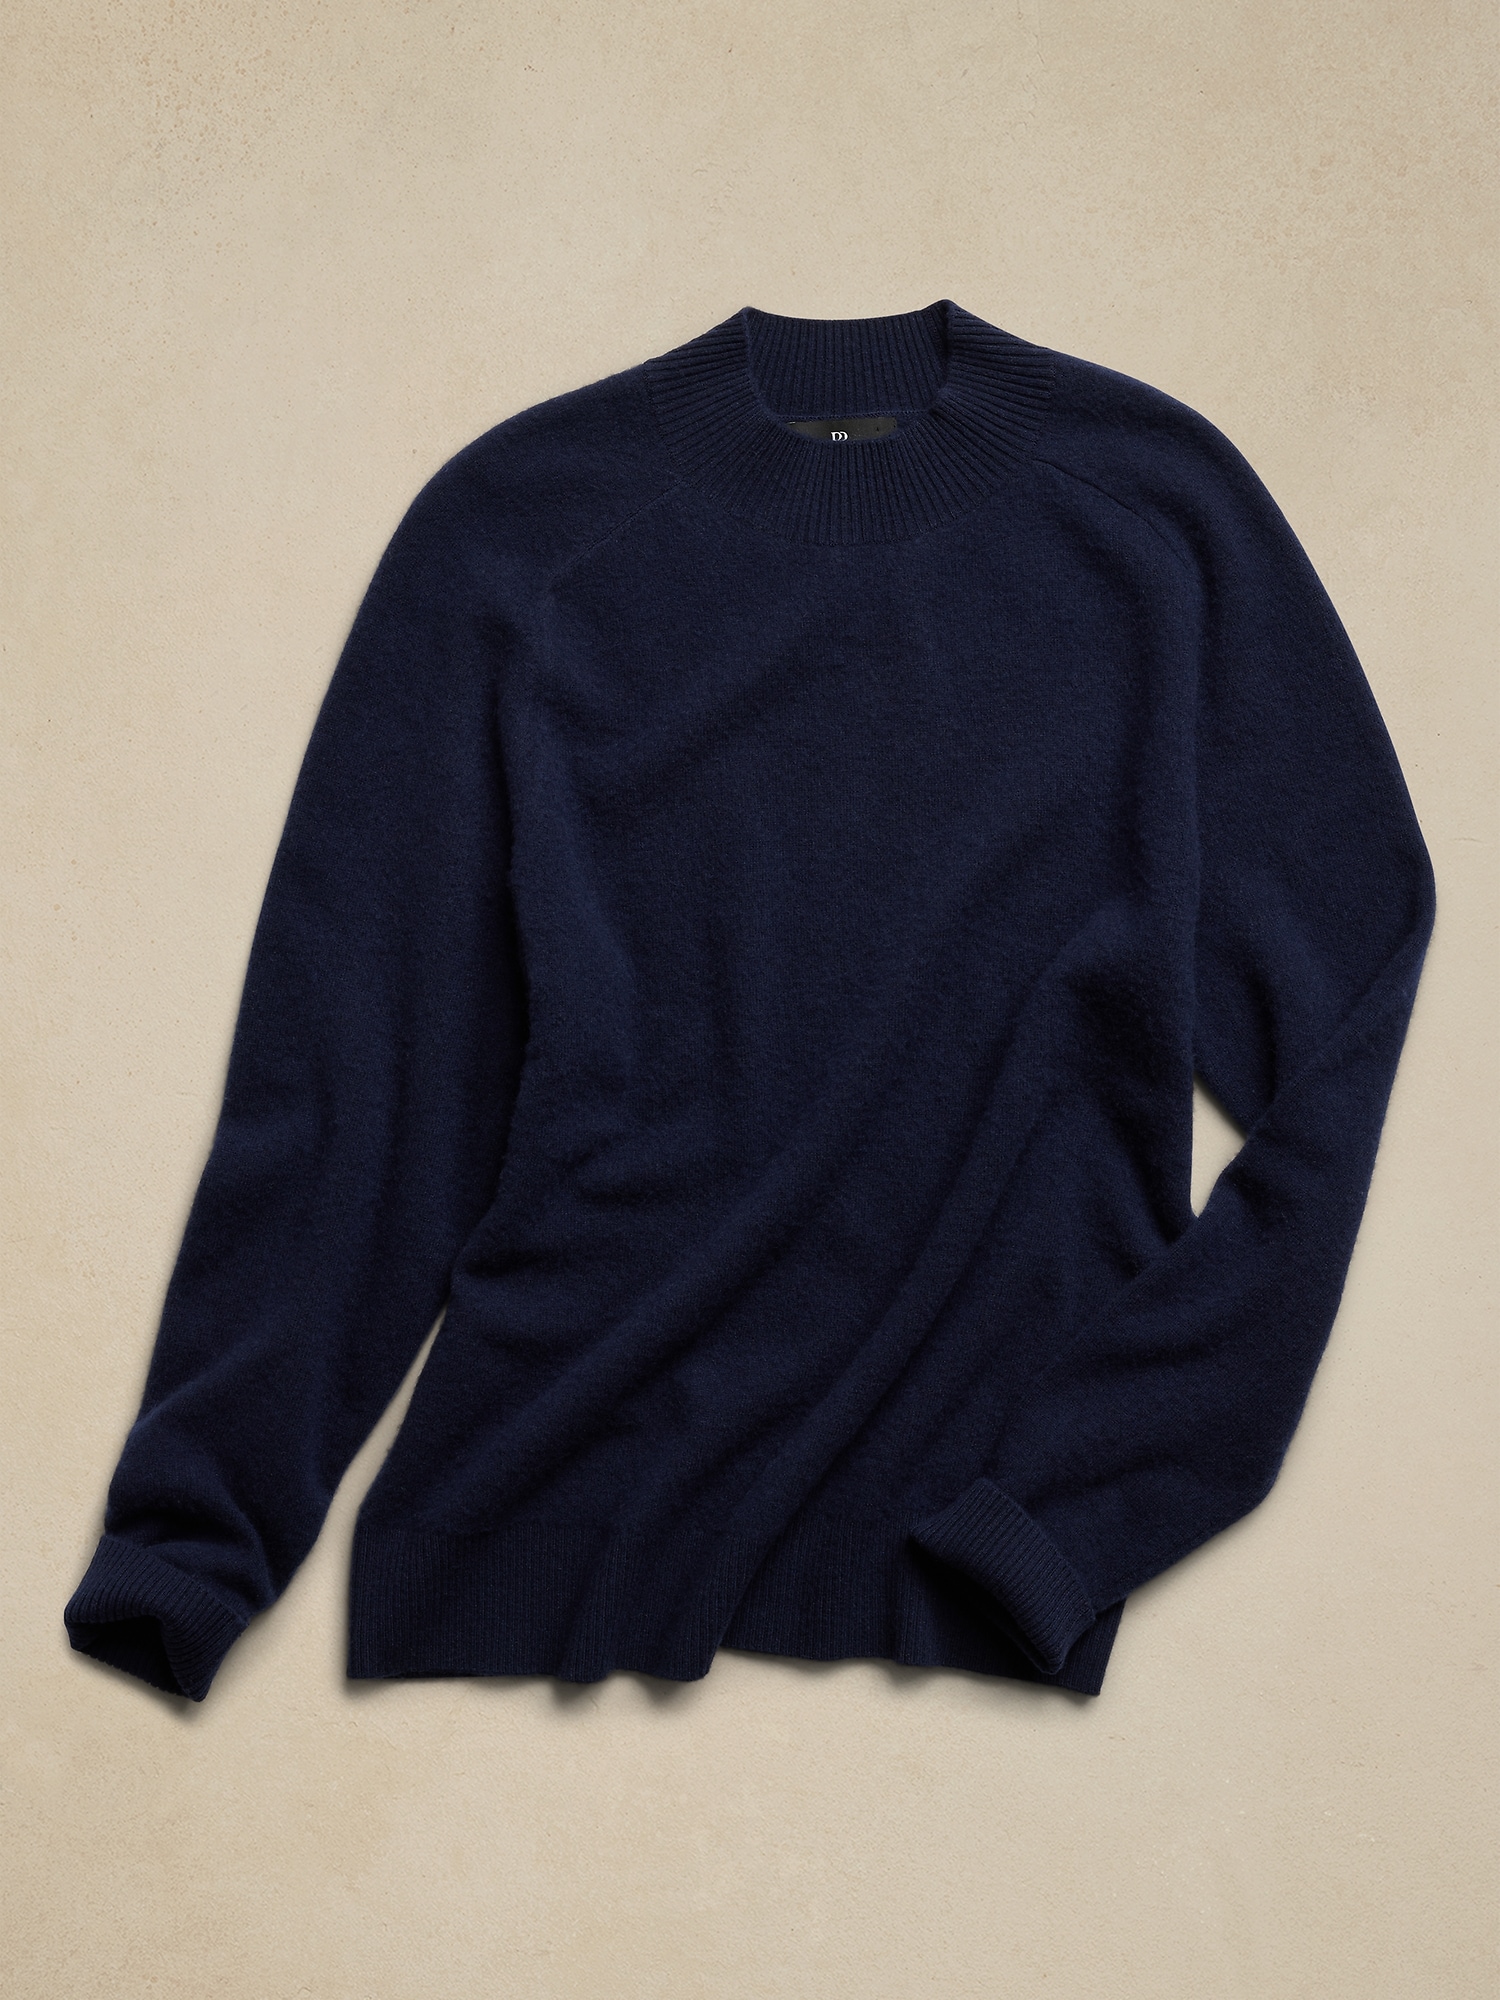 Jaime Merino-Cashmere Sweater